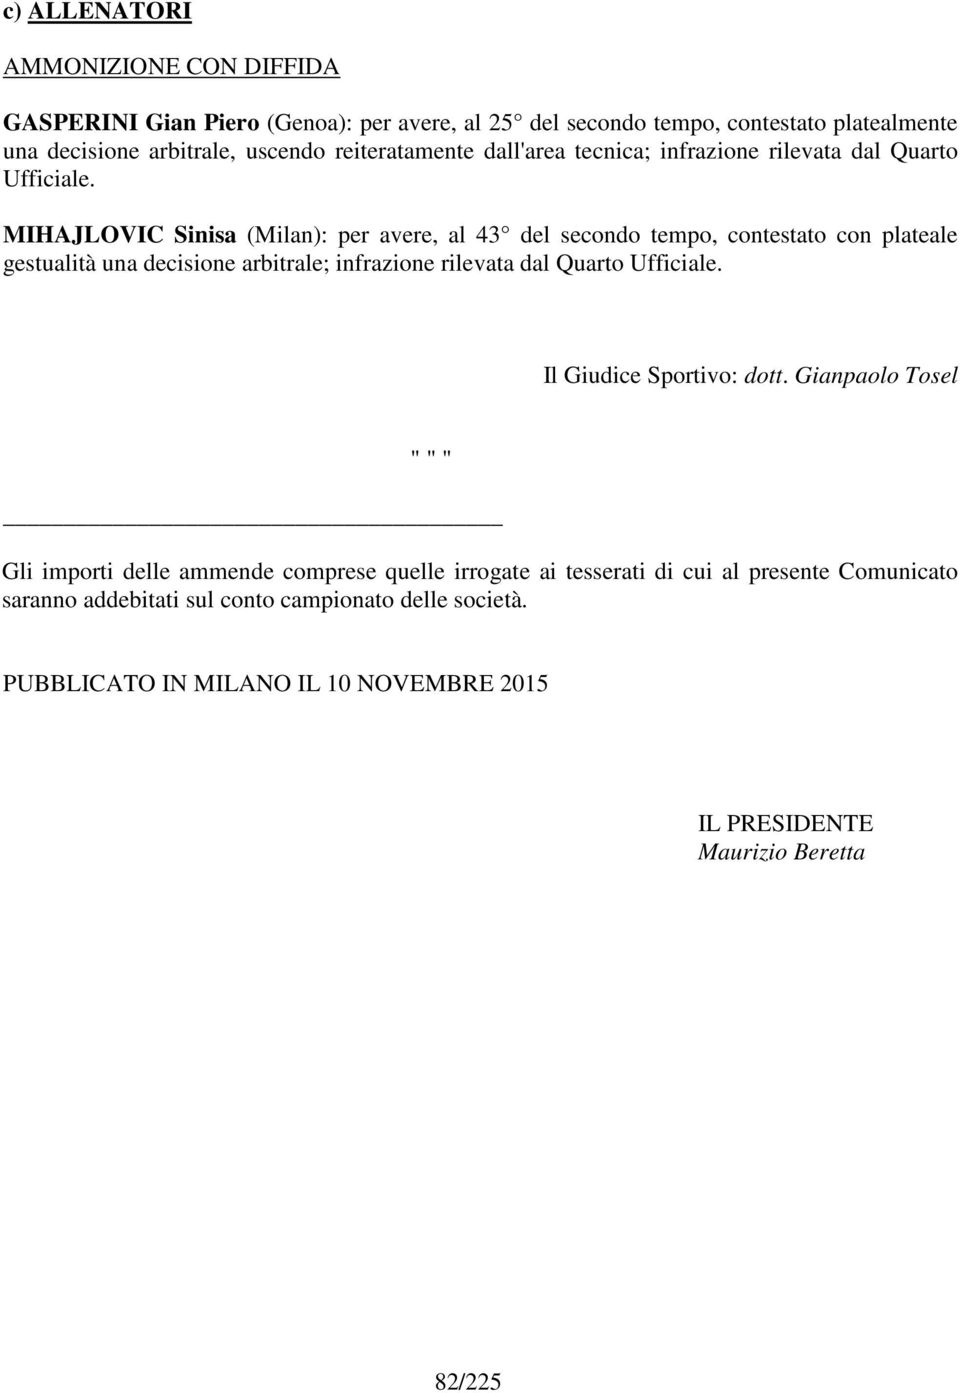 MIHAJLOVIC Sinisa (Milan): per avere, al 43 del secondo tempo, contestato con plateale gestualità una decisione arbitrale; infrazione rilevata dal Quarto Ufficiale.